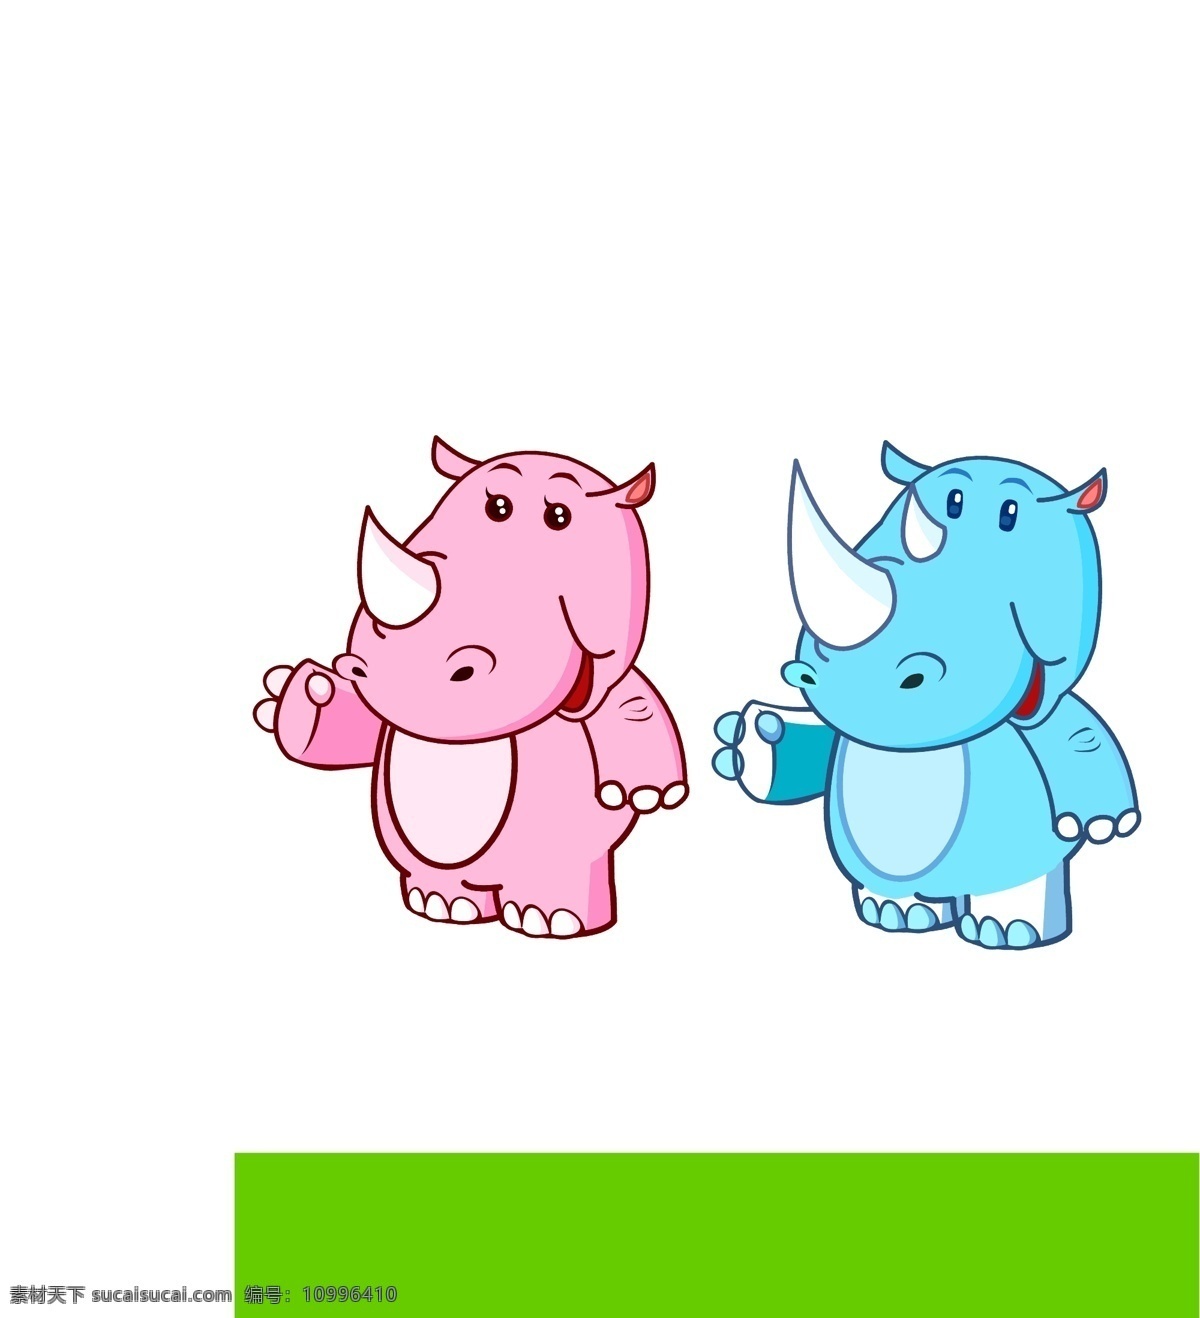 超 可爱 犀牛 宝贝 造形 图 吉祥物 卡通形象 漫画 动漫 造型 牛 野生动物 生物世界 矢量